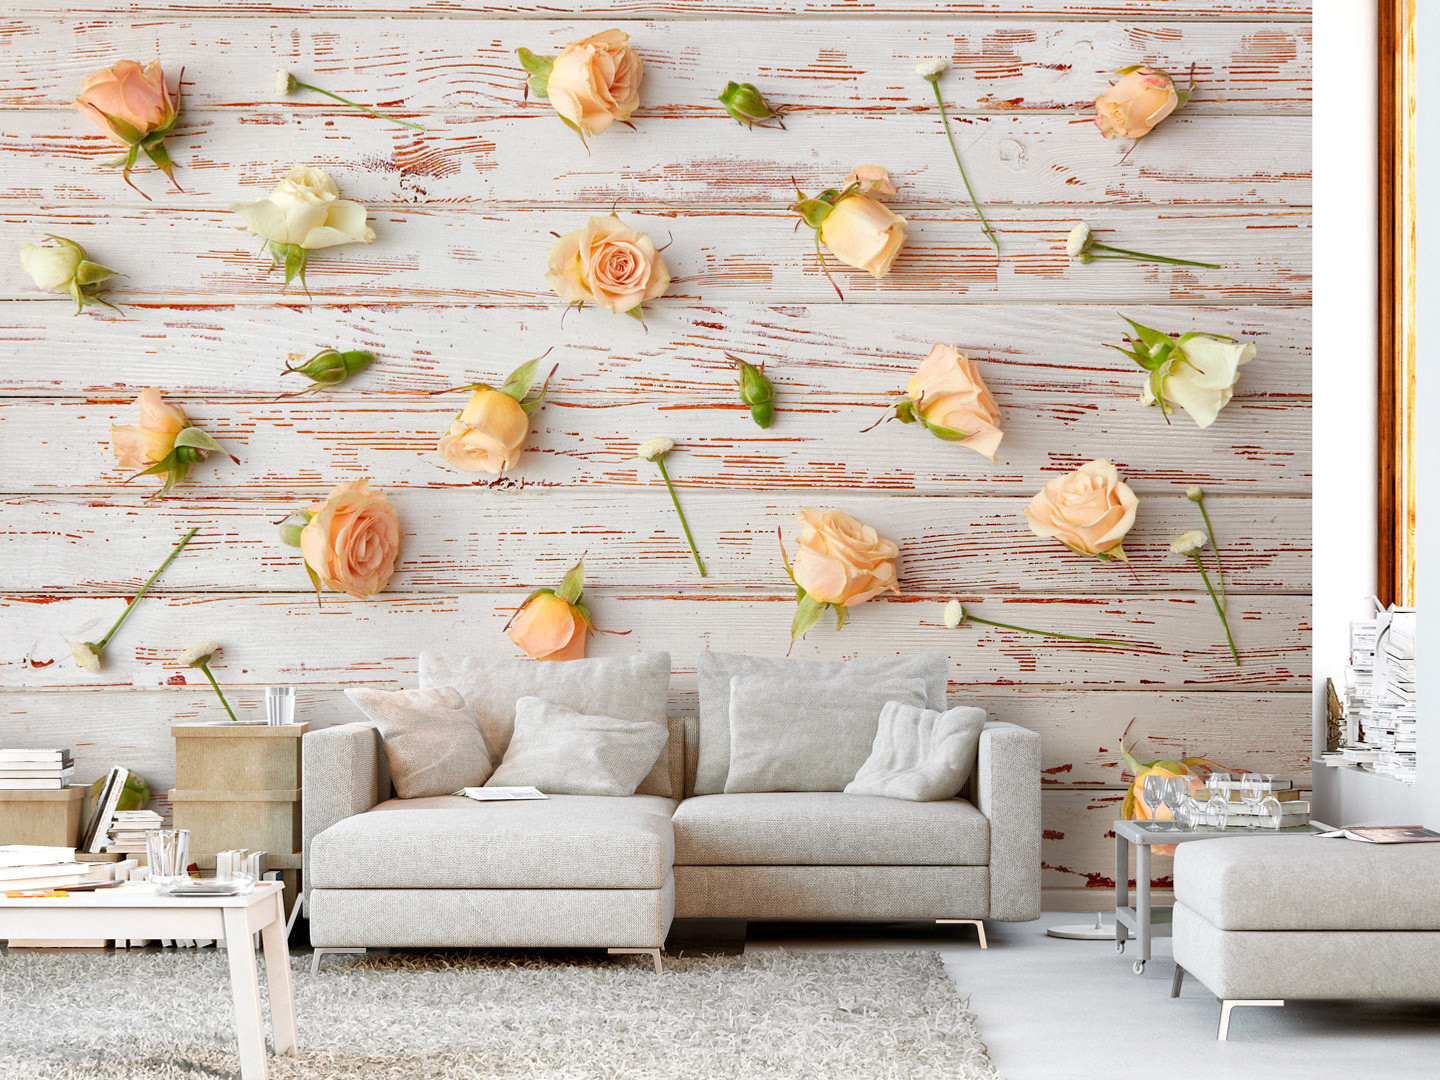 Wall Mural Wood & Roses - Wallpaper - HD Wallpaper 